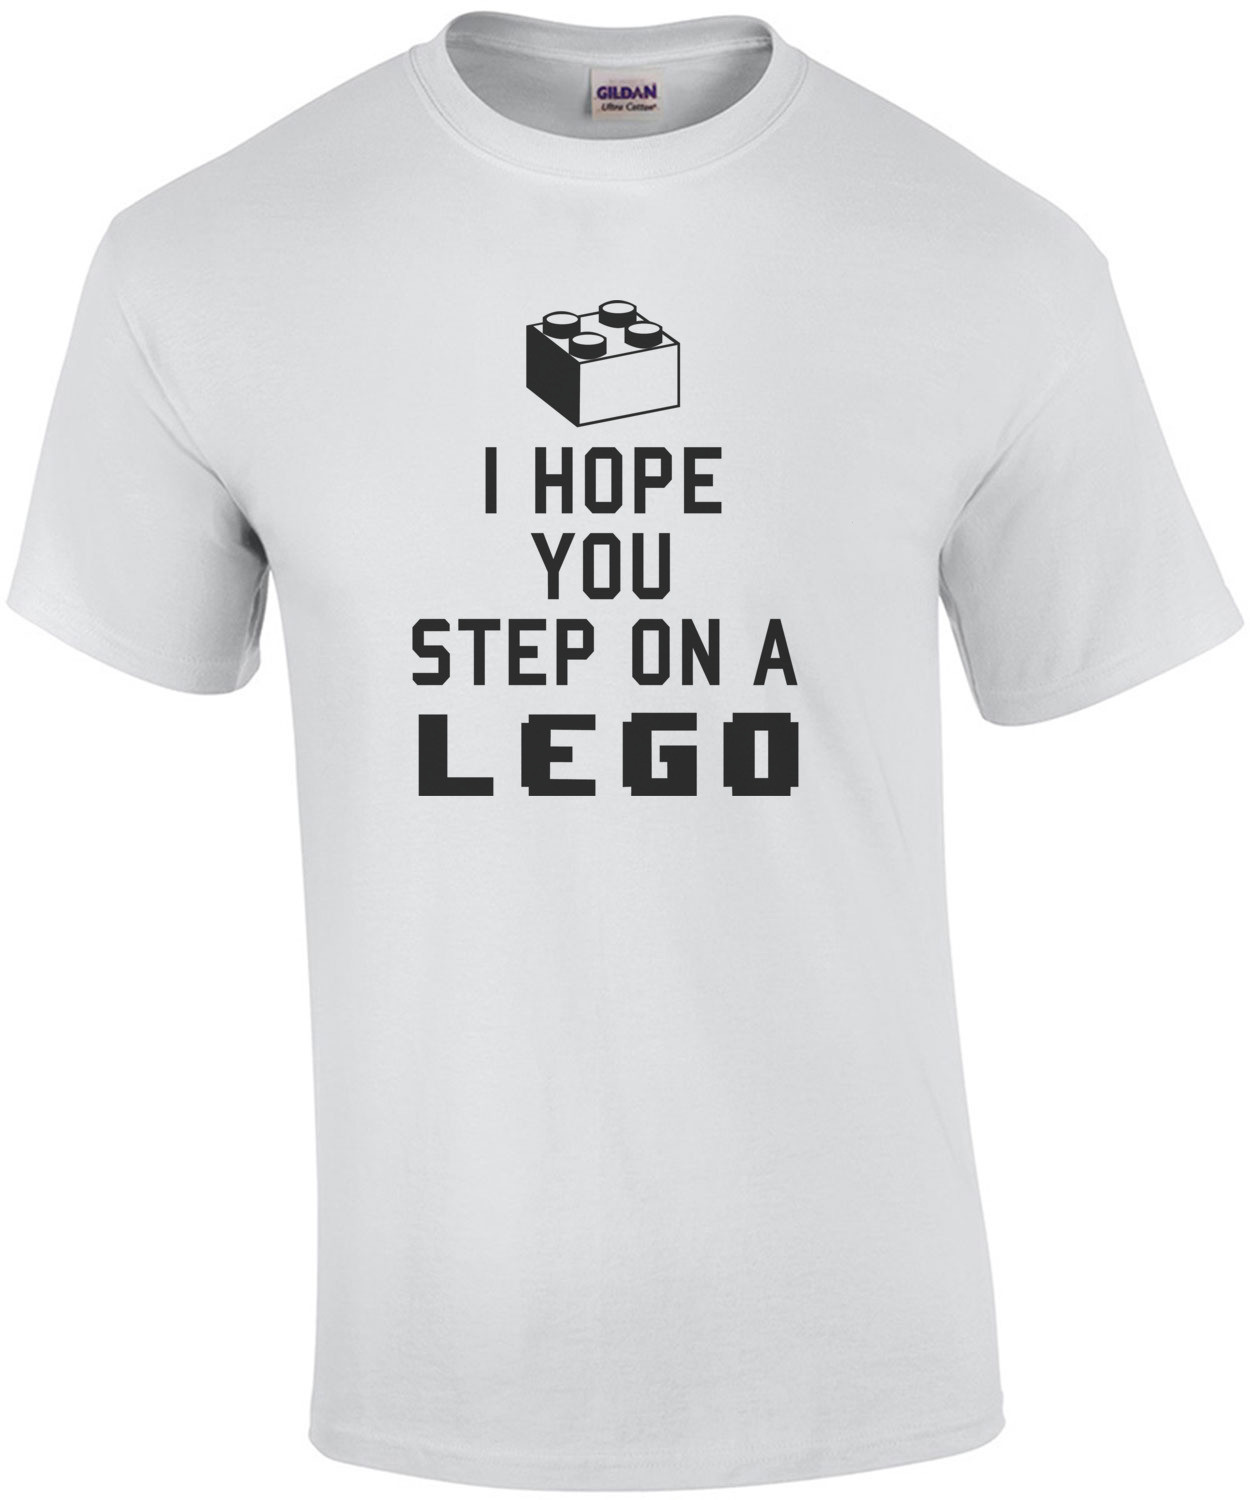 I hope you step on a lego t-shirt